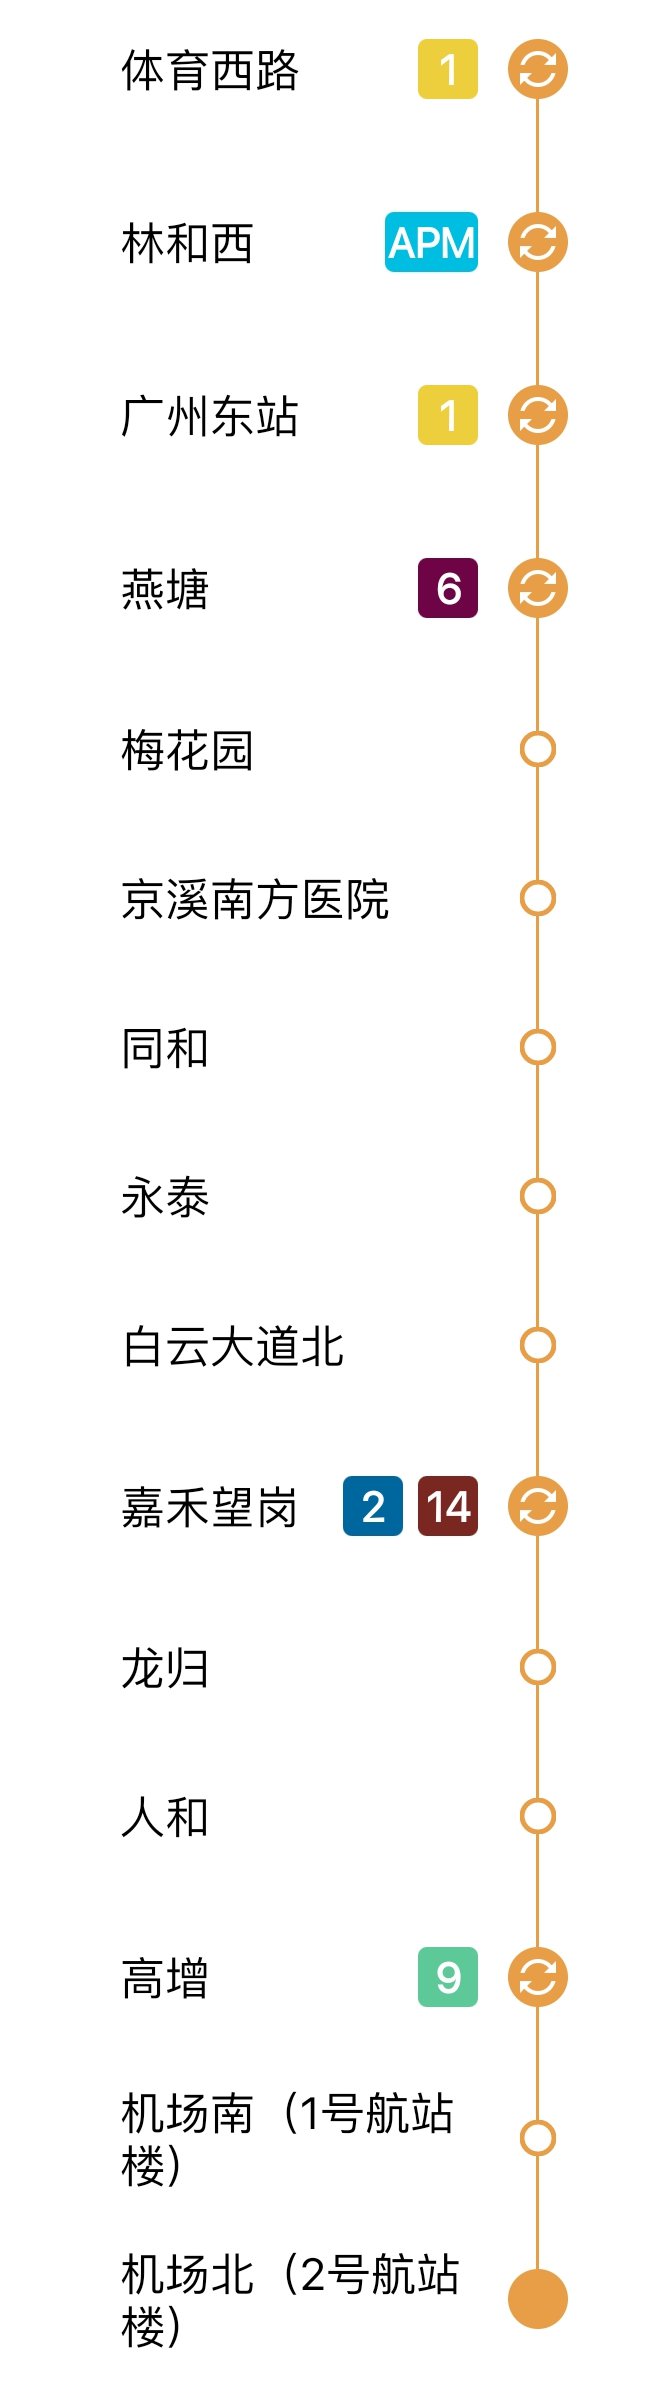 广州地铁三号线北延段（站点线路图+运营时间）